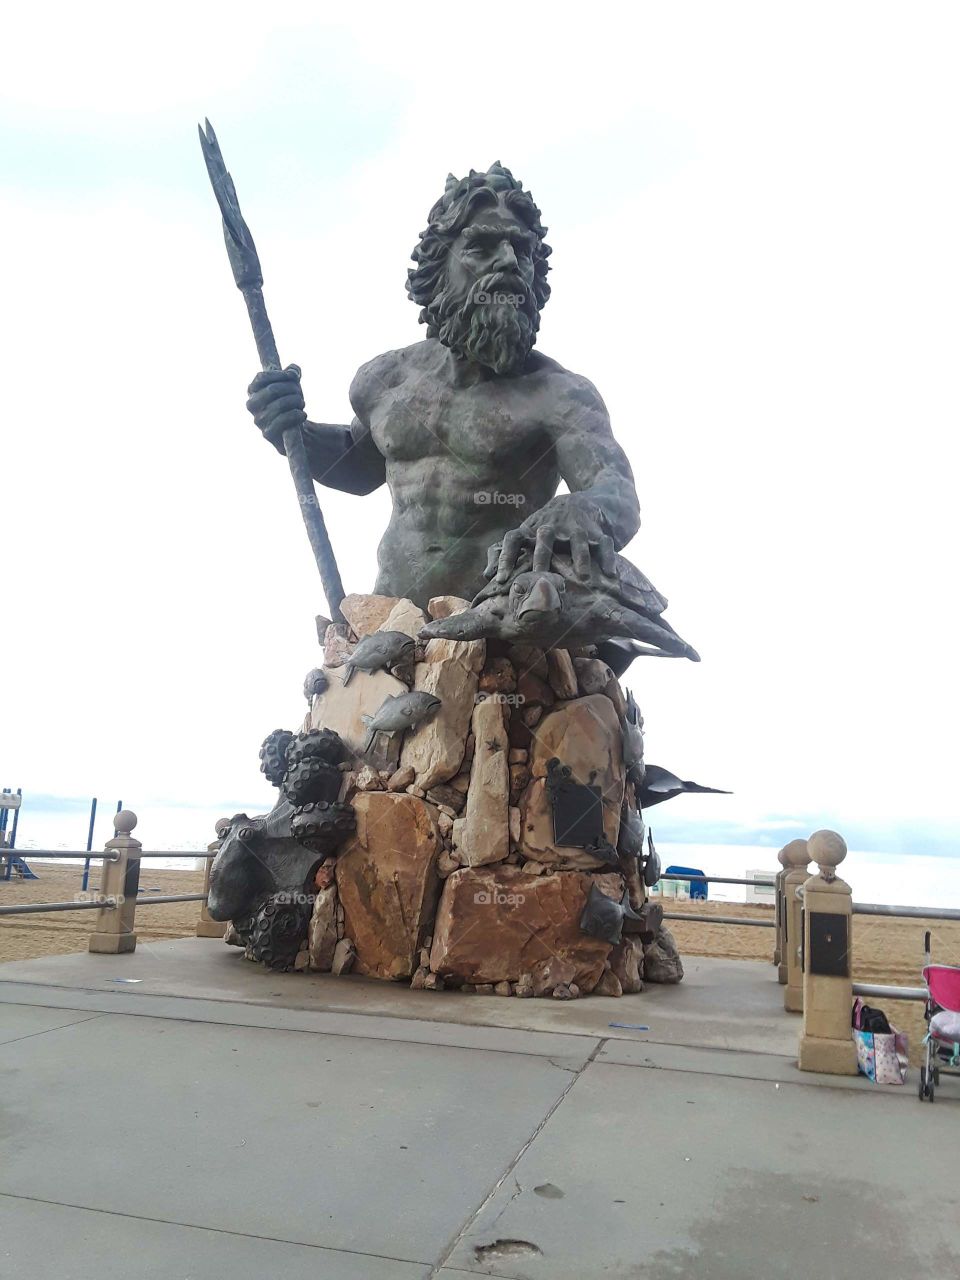 Neptune Statue in Virginia Beach, Virginia.